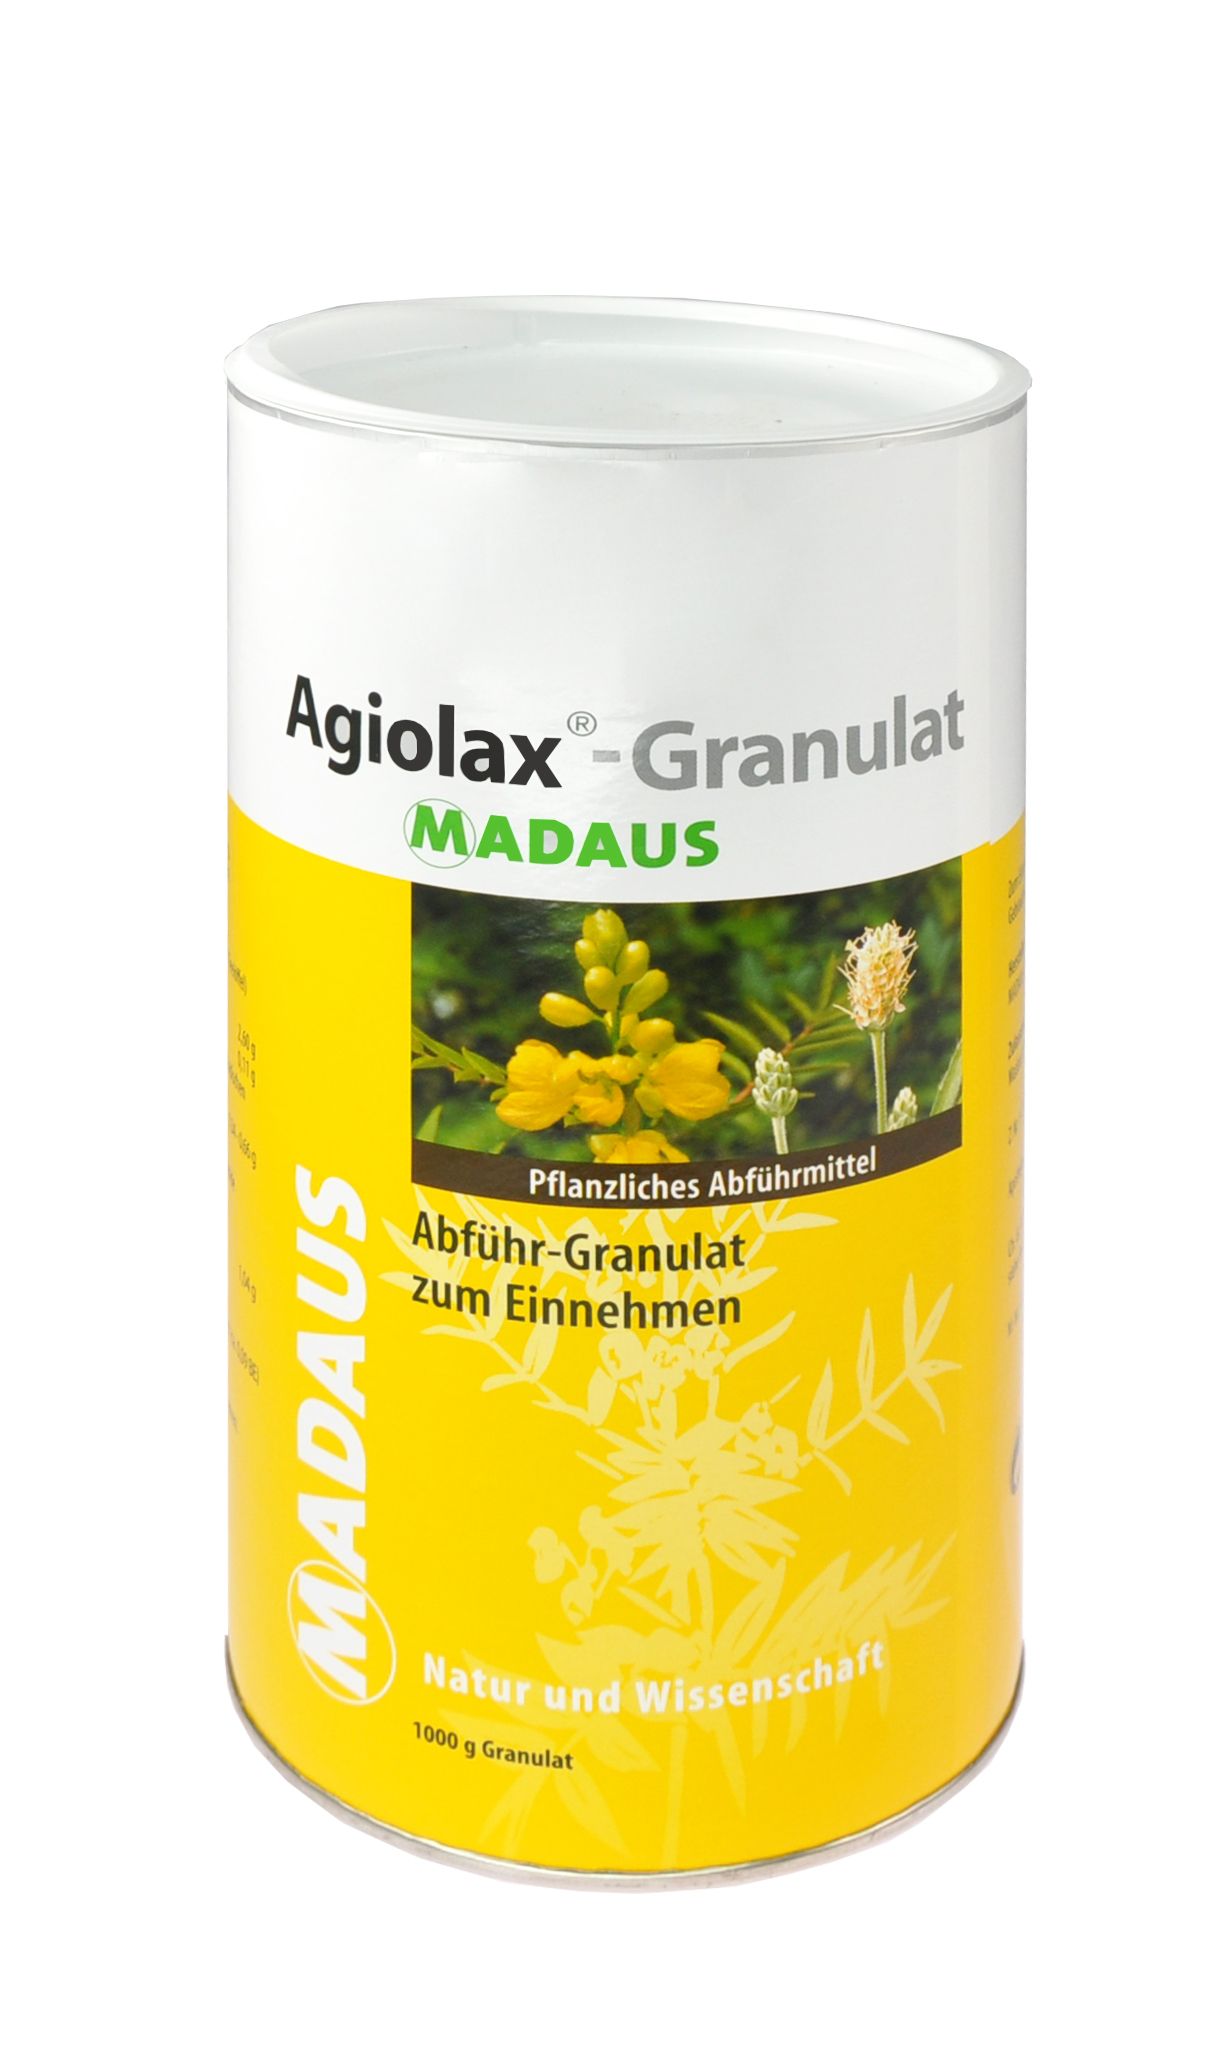 Abbildung Agiolax-Granulat